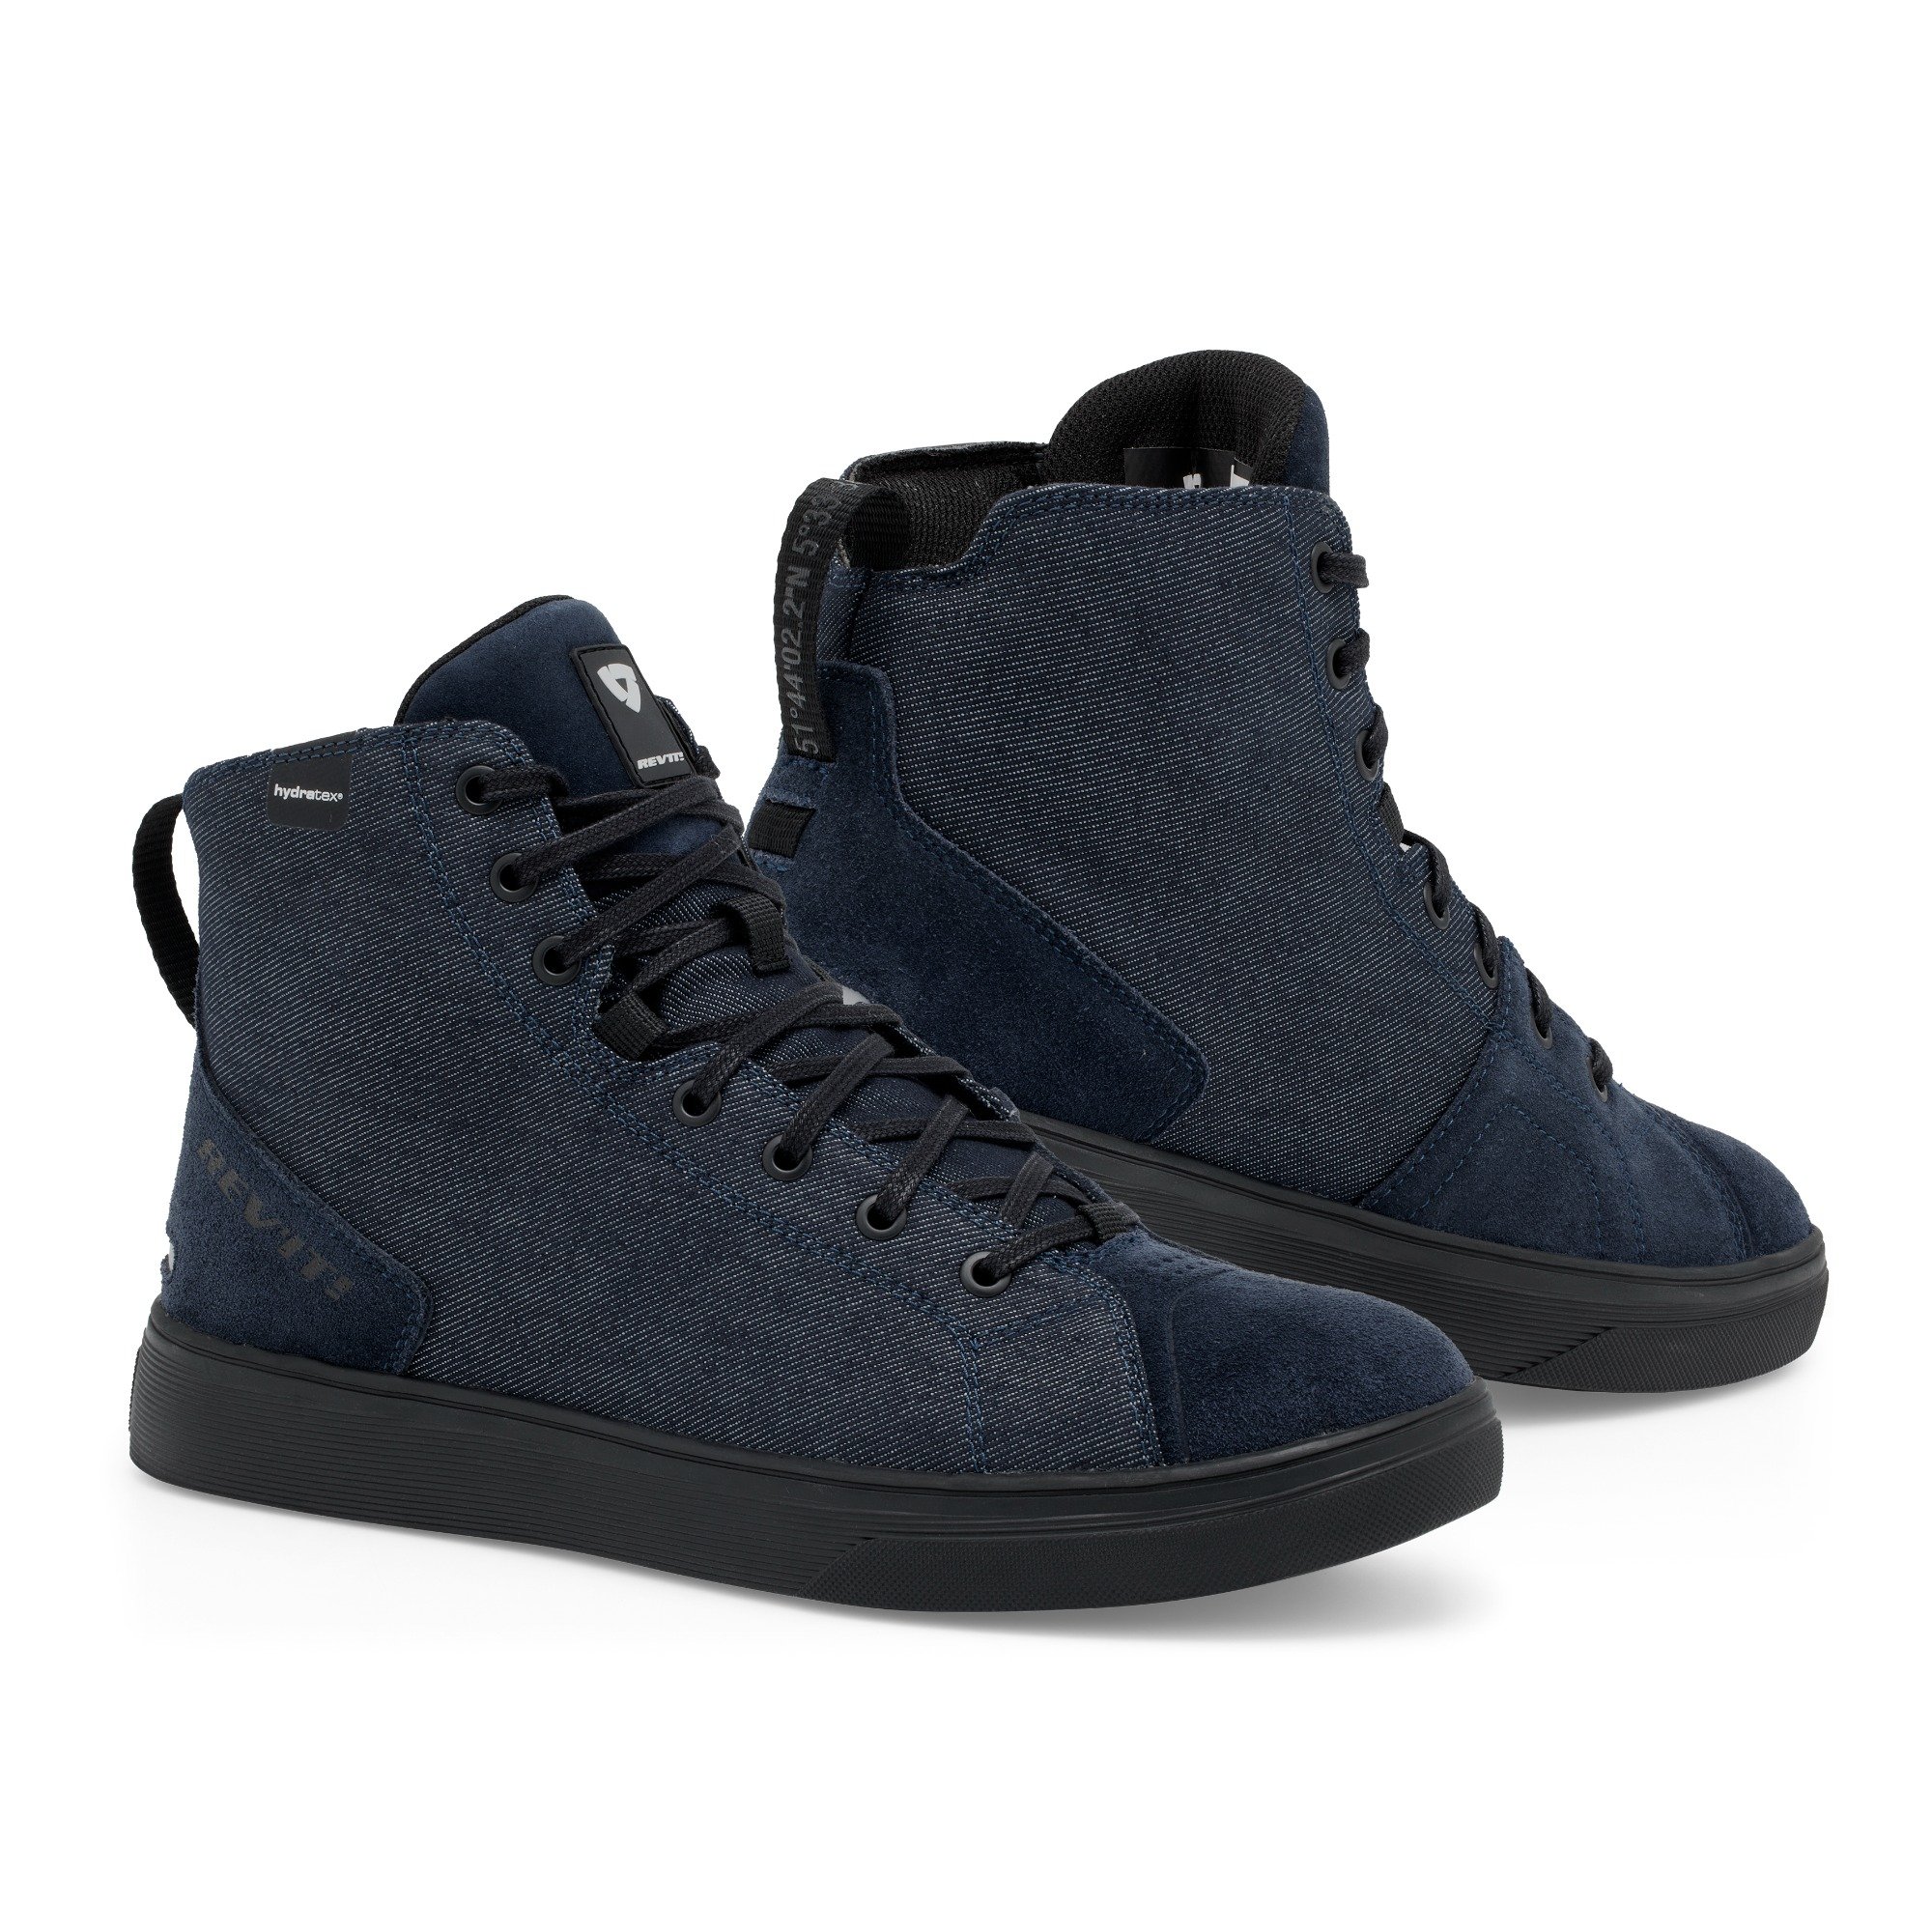 Image of EU REV'IT! Delta H2O Chaussures Foncé Bleu Noir Taille 41